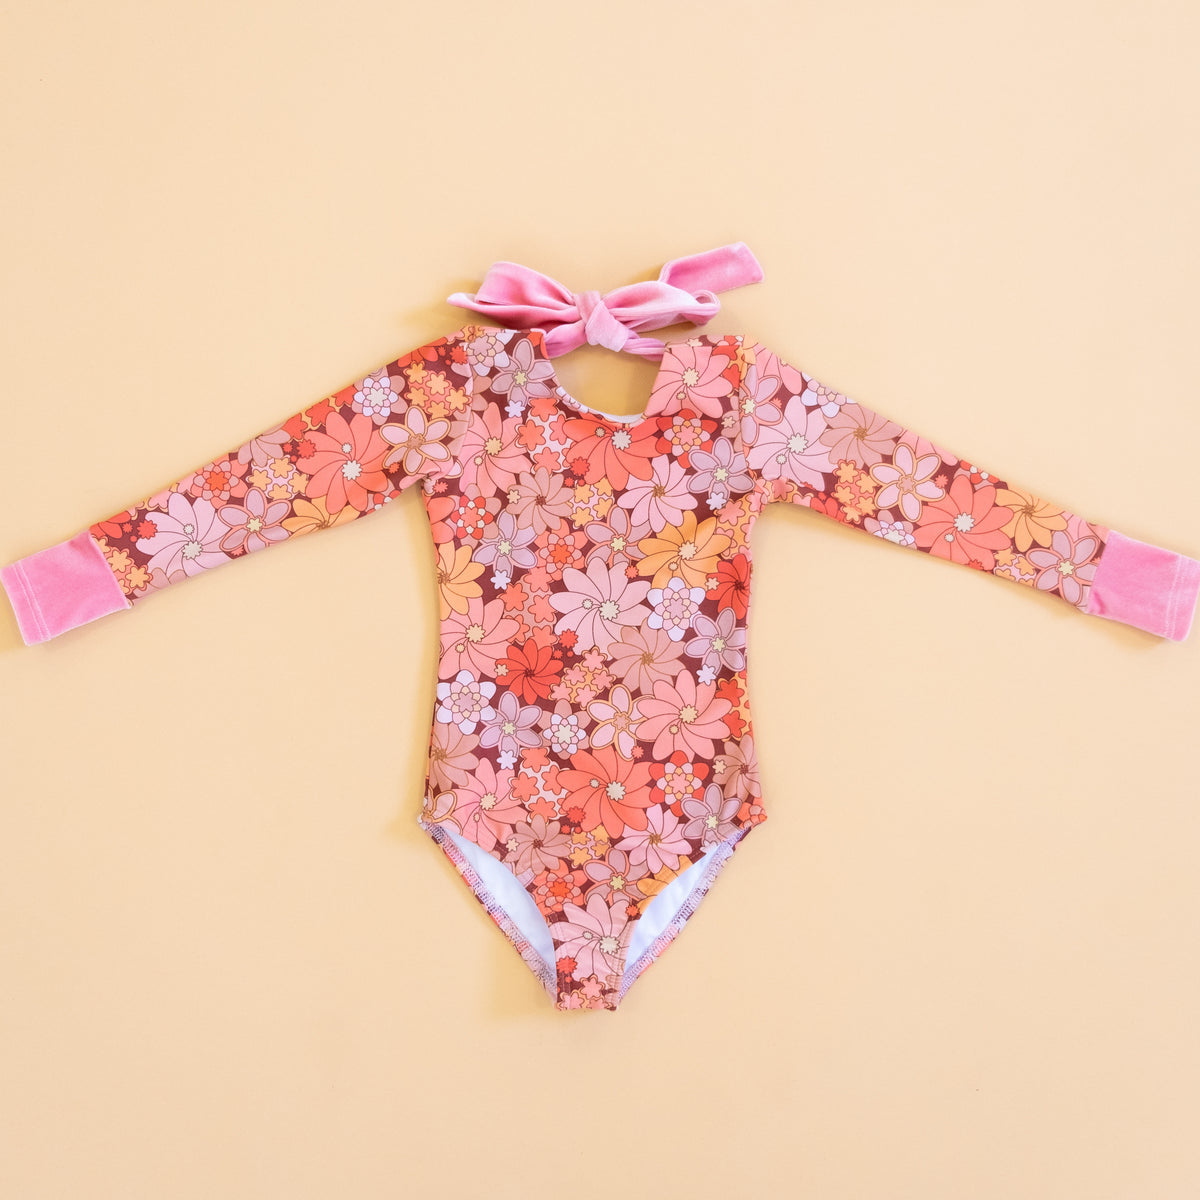 Retro-Inspired Children's Swimwear & Clothing - Saint Ida